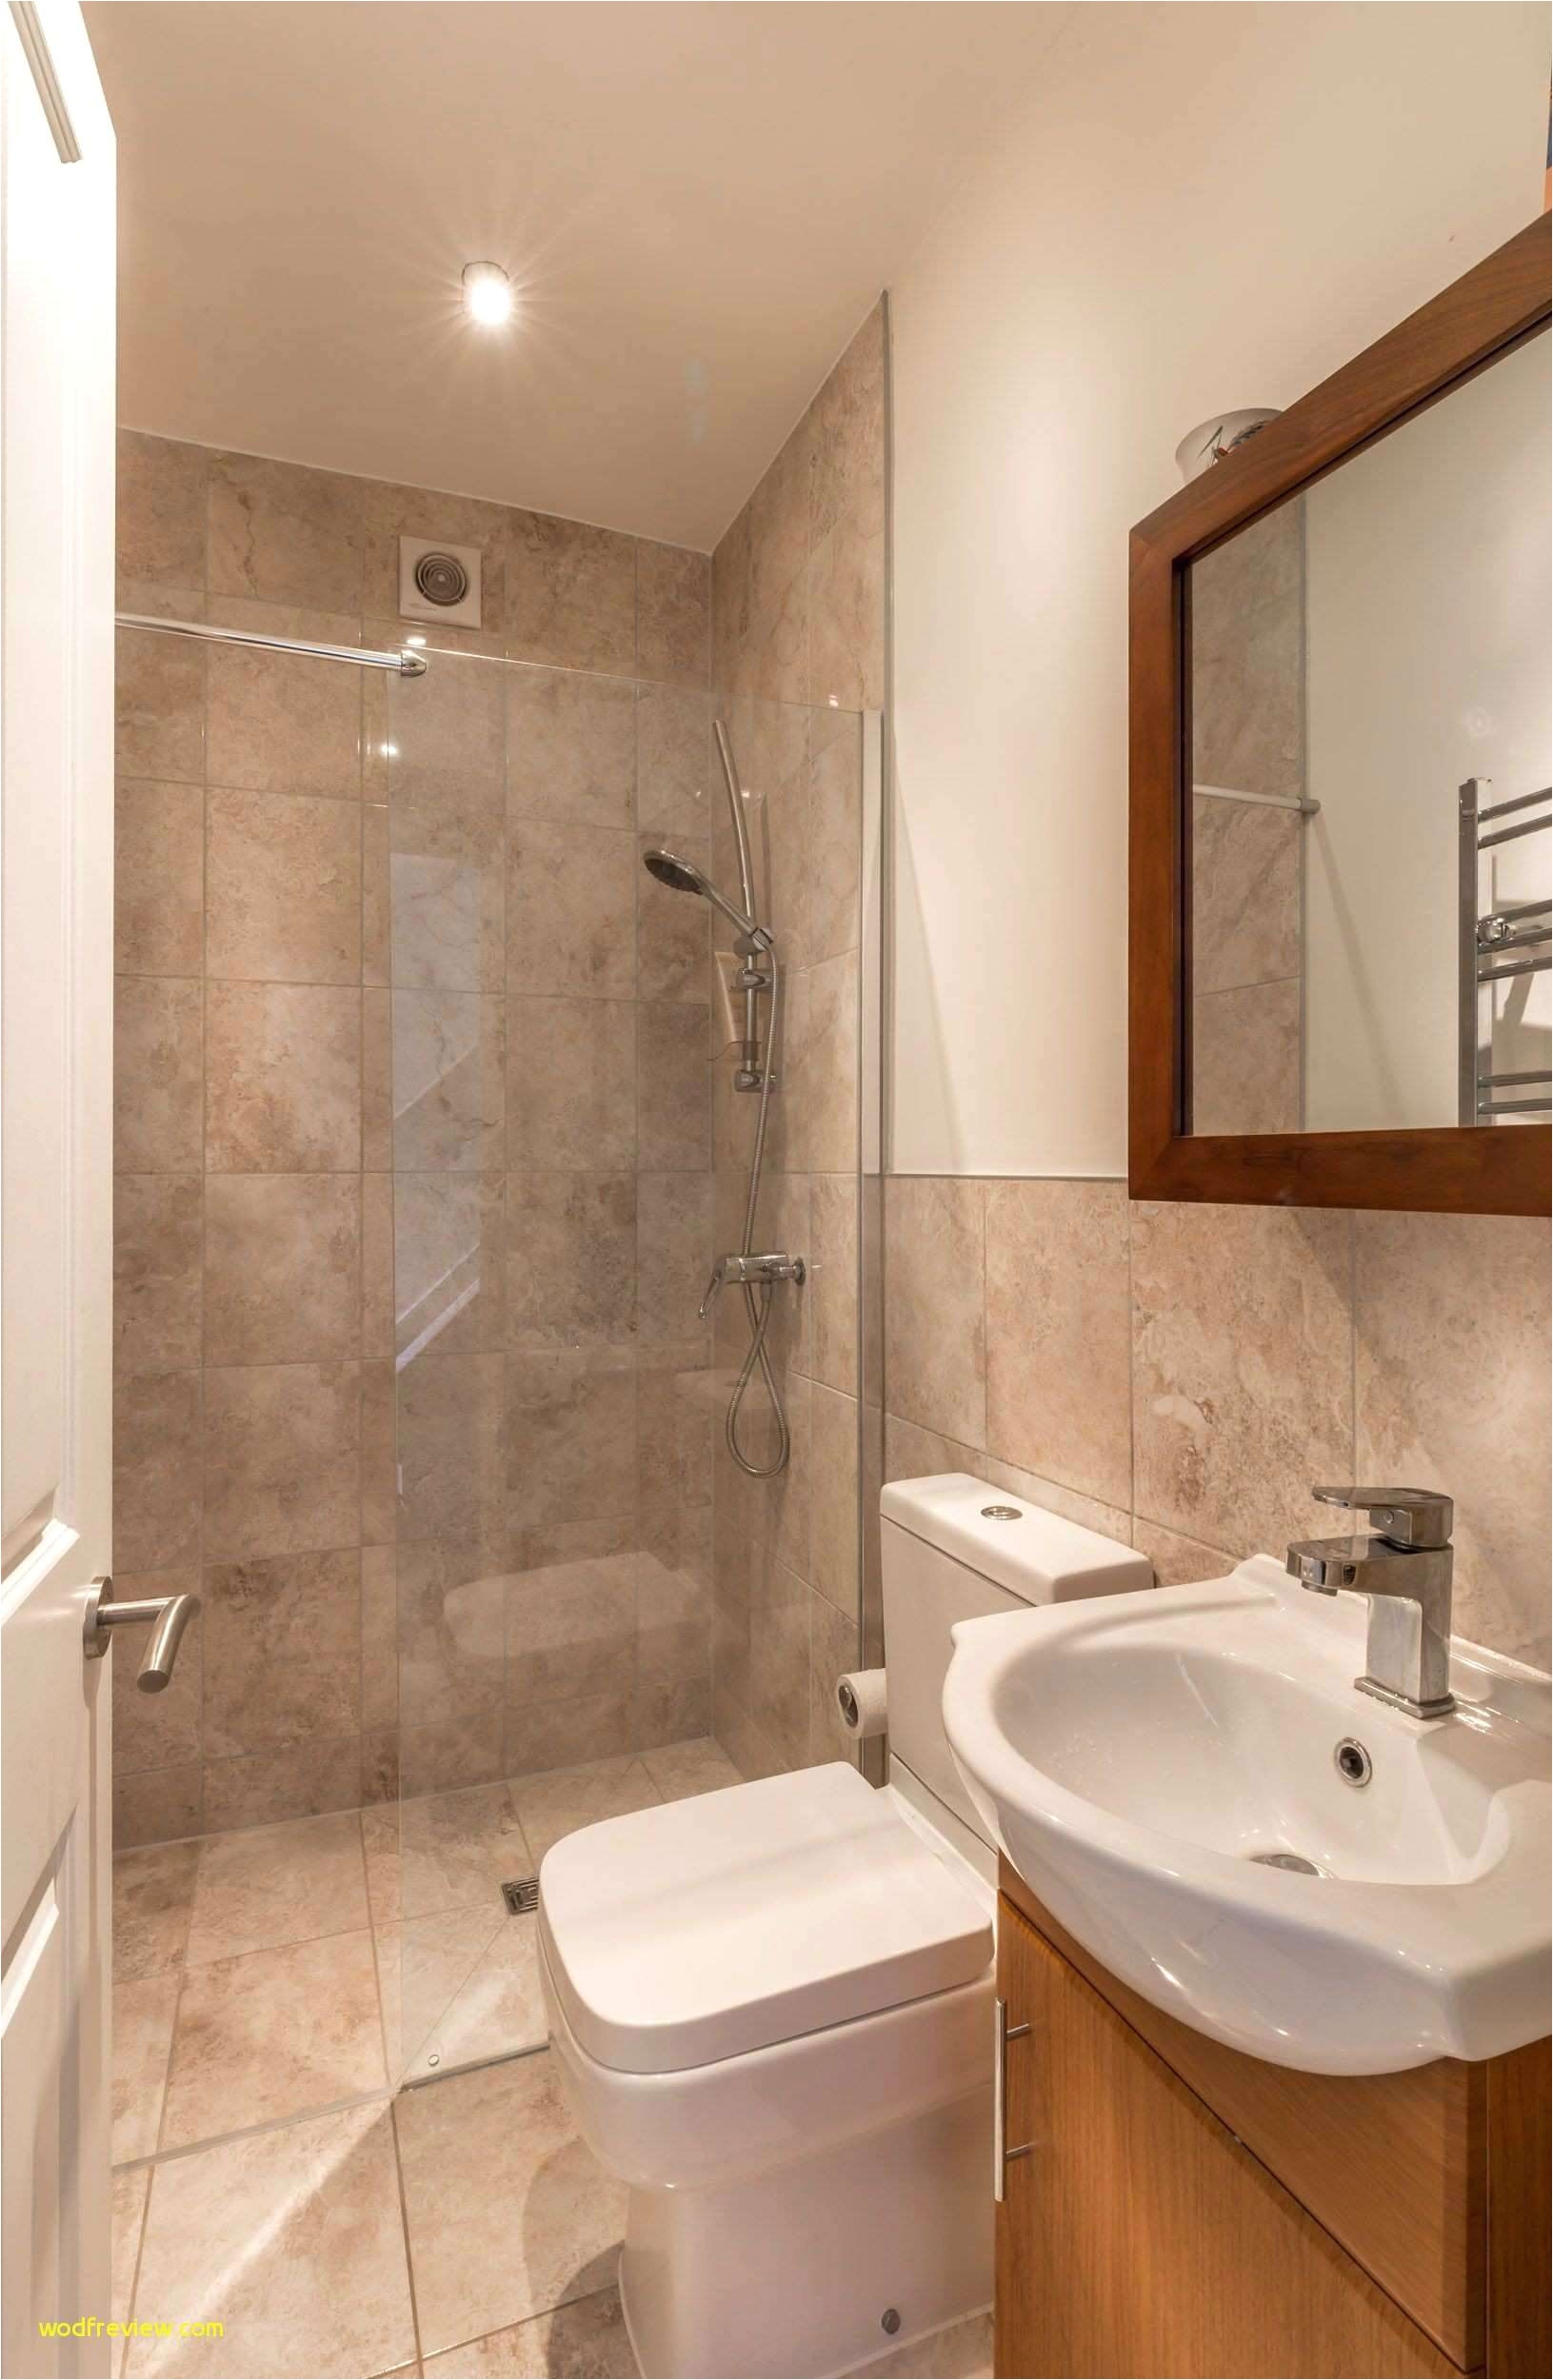 bathroom shower tile lovely shower tile ideas fresh amazing bathroom design new luxury shower